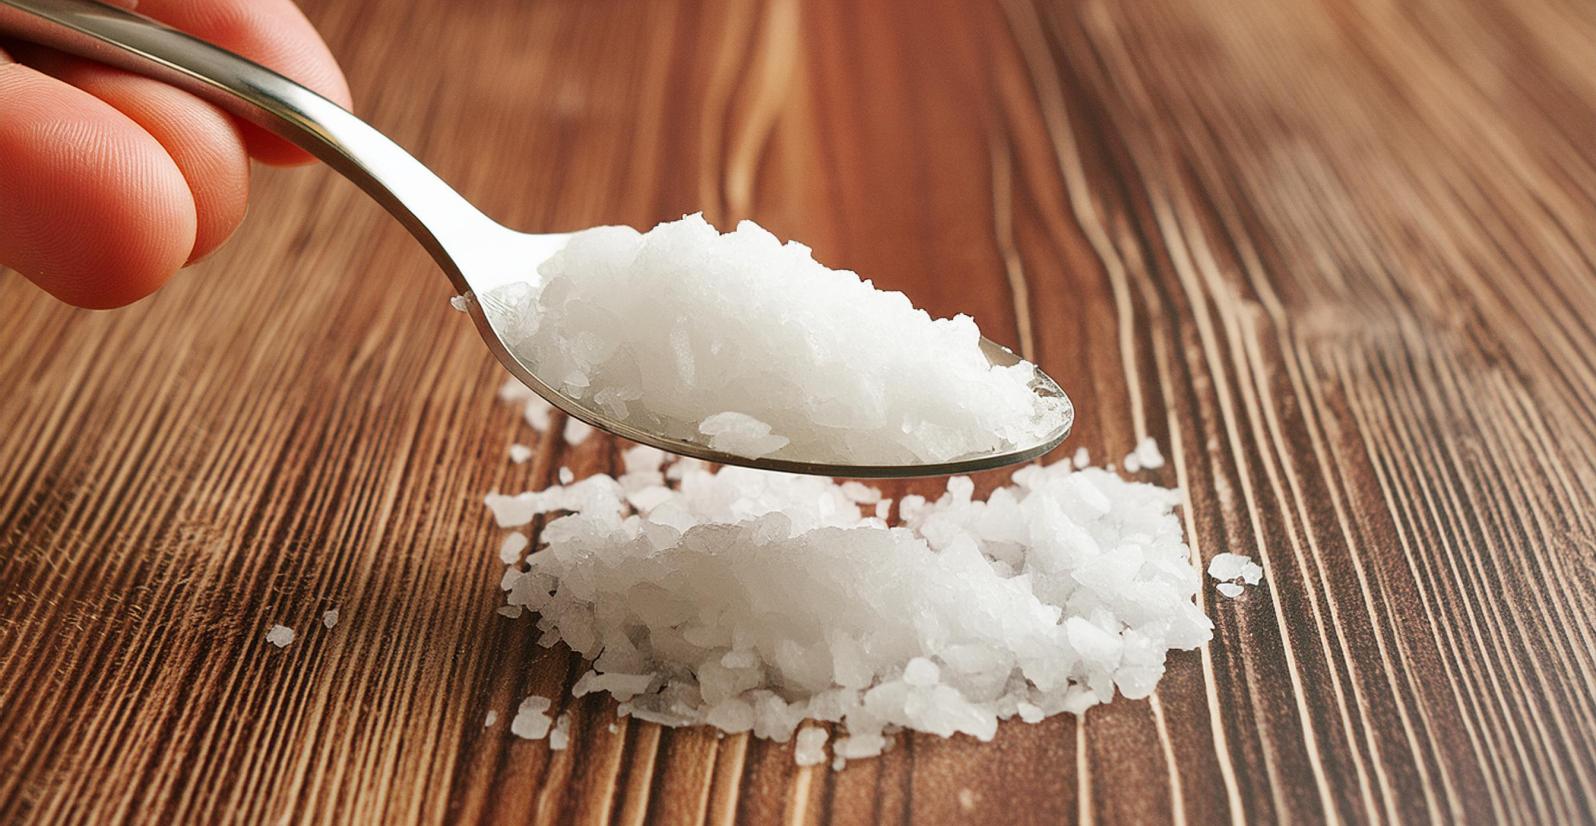 Minuto PASS-IPL #7 - Como reduzir o consumo de sal